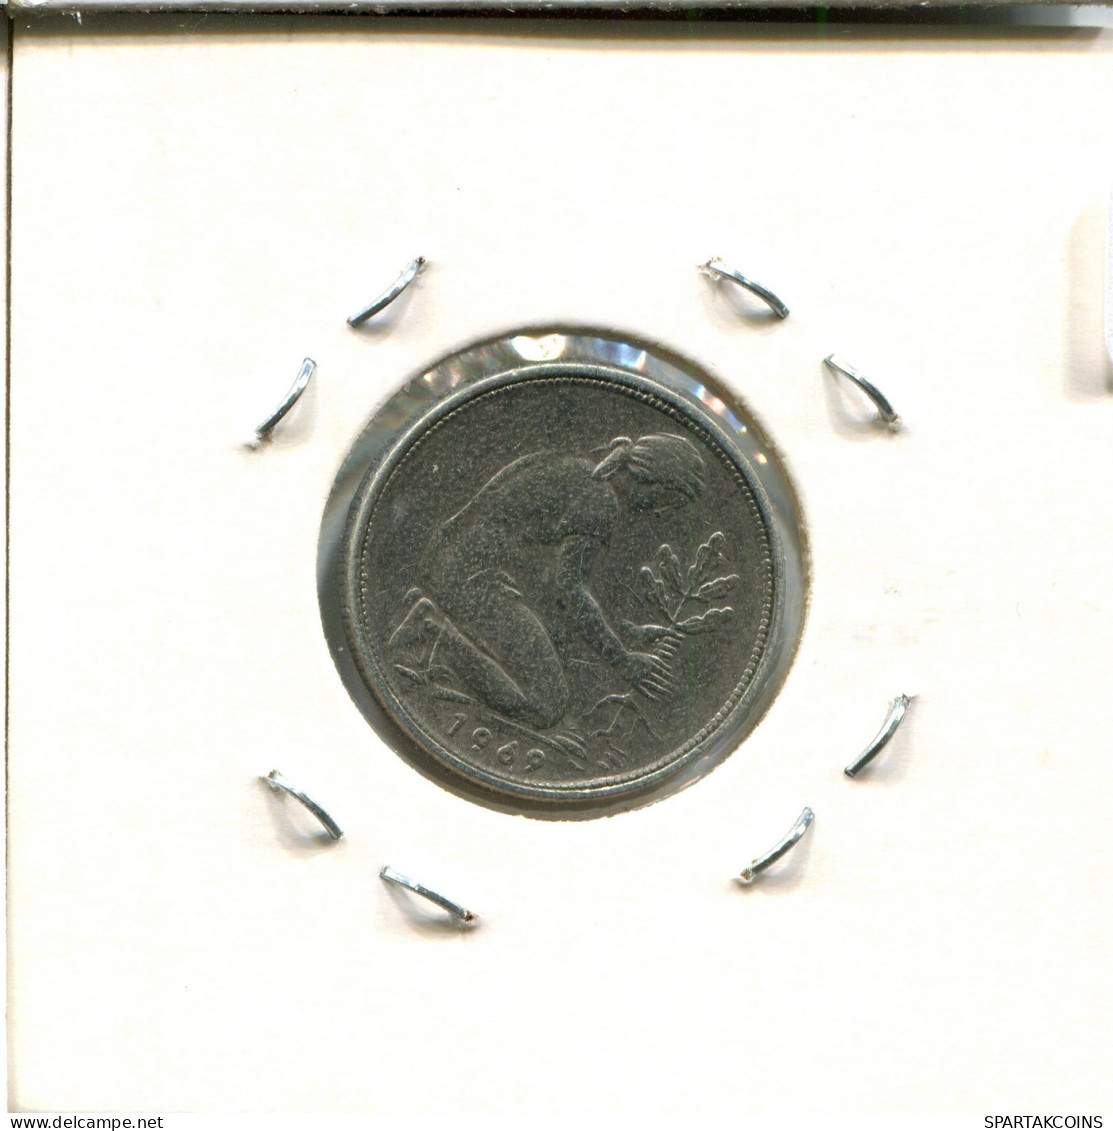 50 PFENNIG 1969 F BRD ALEMANIA Moneda GERMANY #DB552.E.A - 50 Pfennig